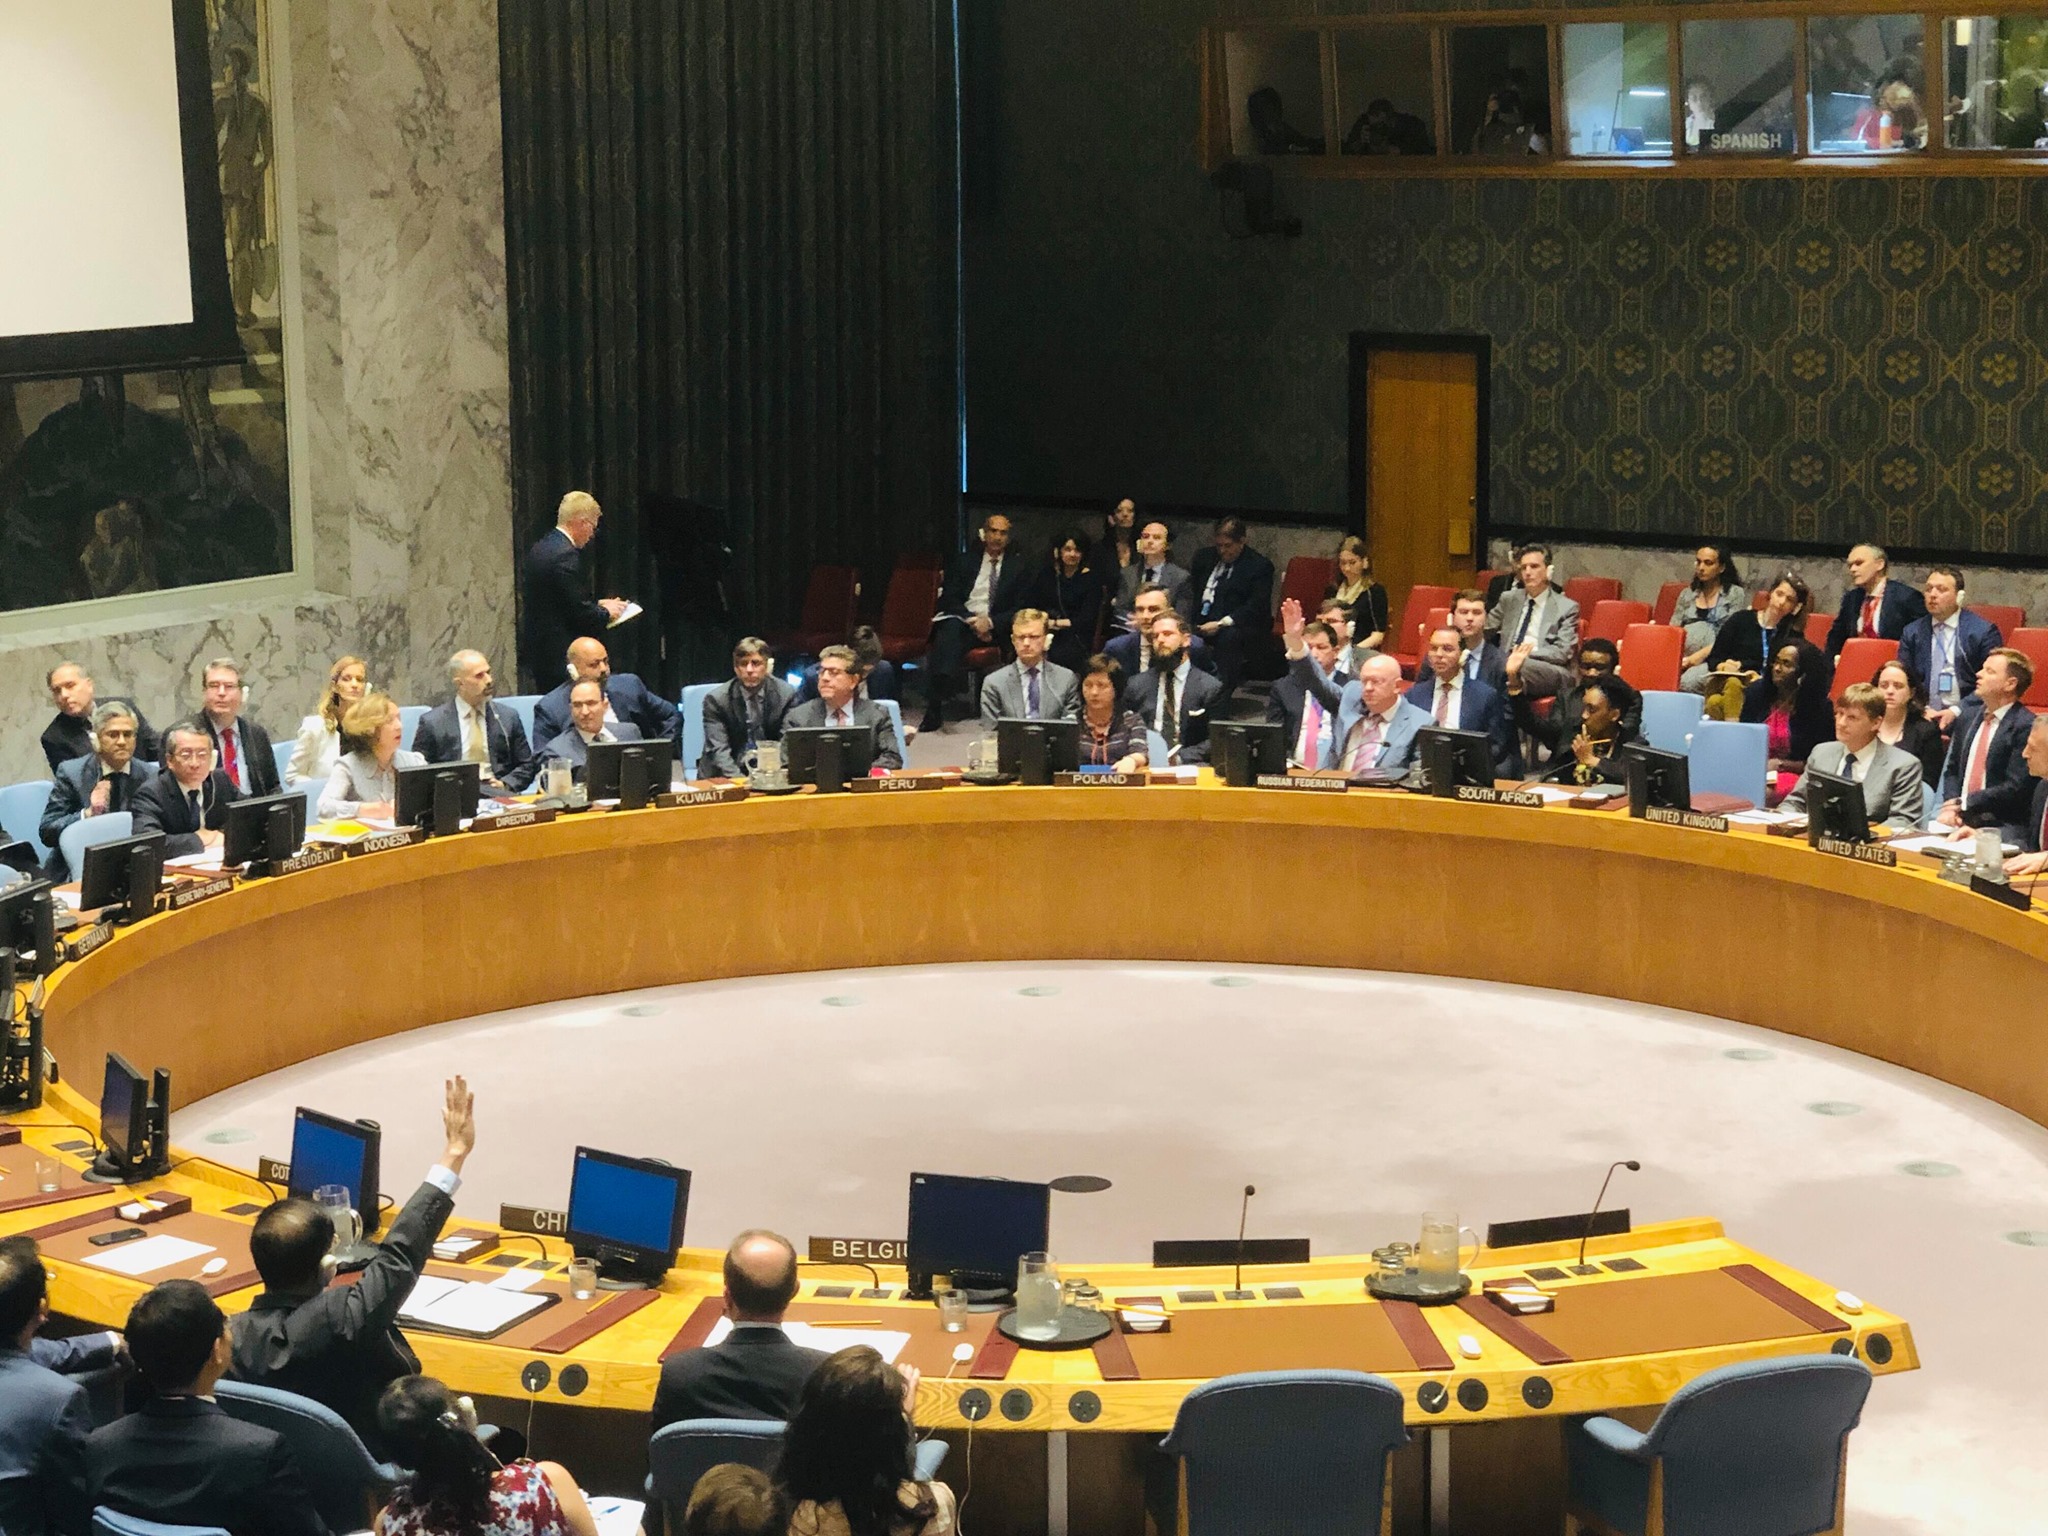 Рада безпеки ООН відмовилася розглядати український закон про мову